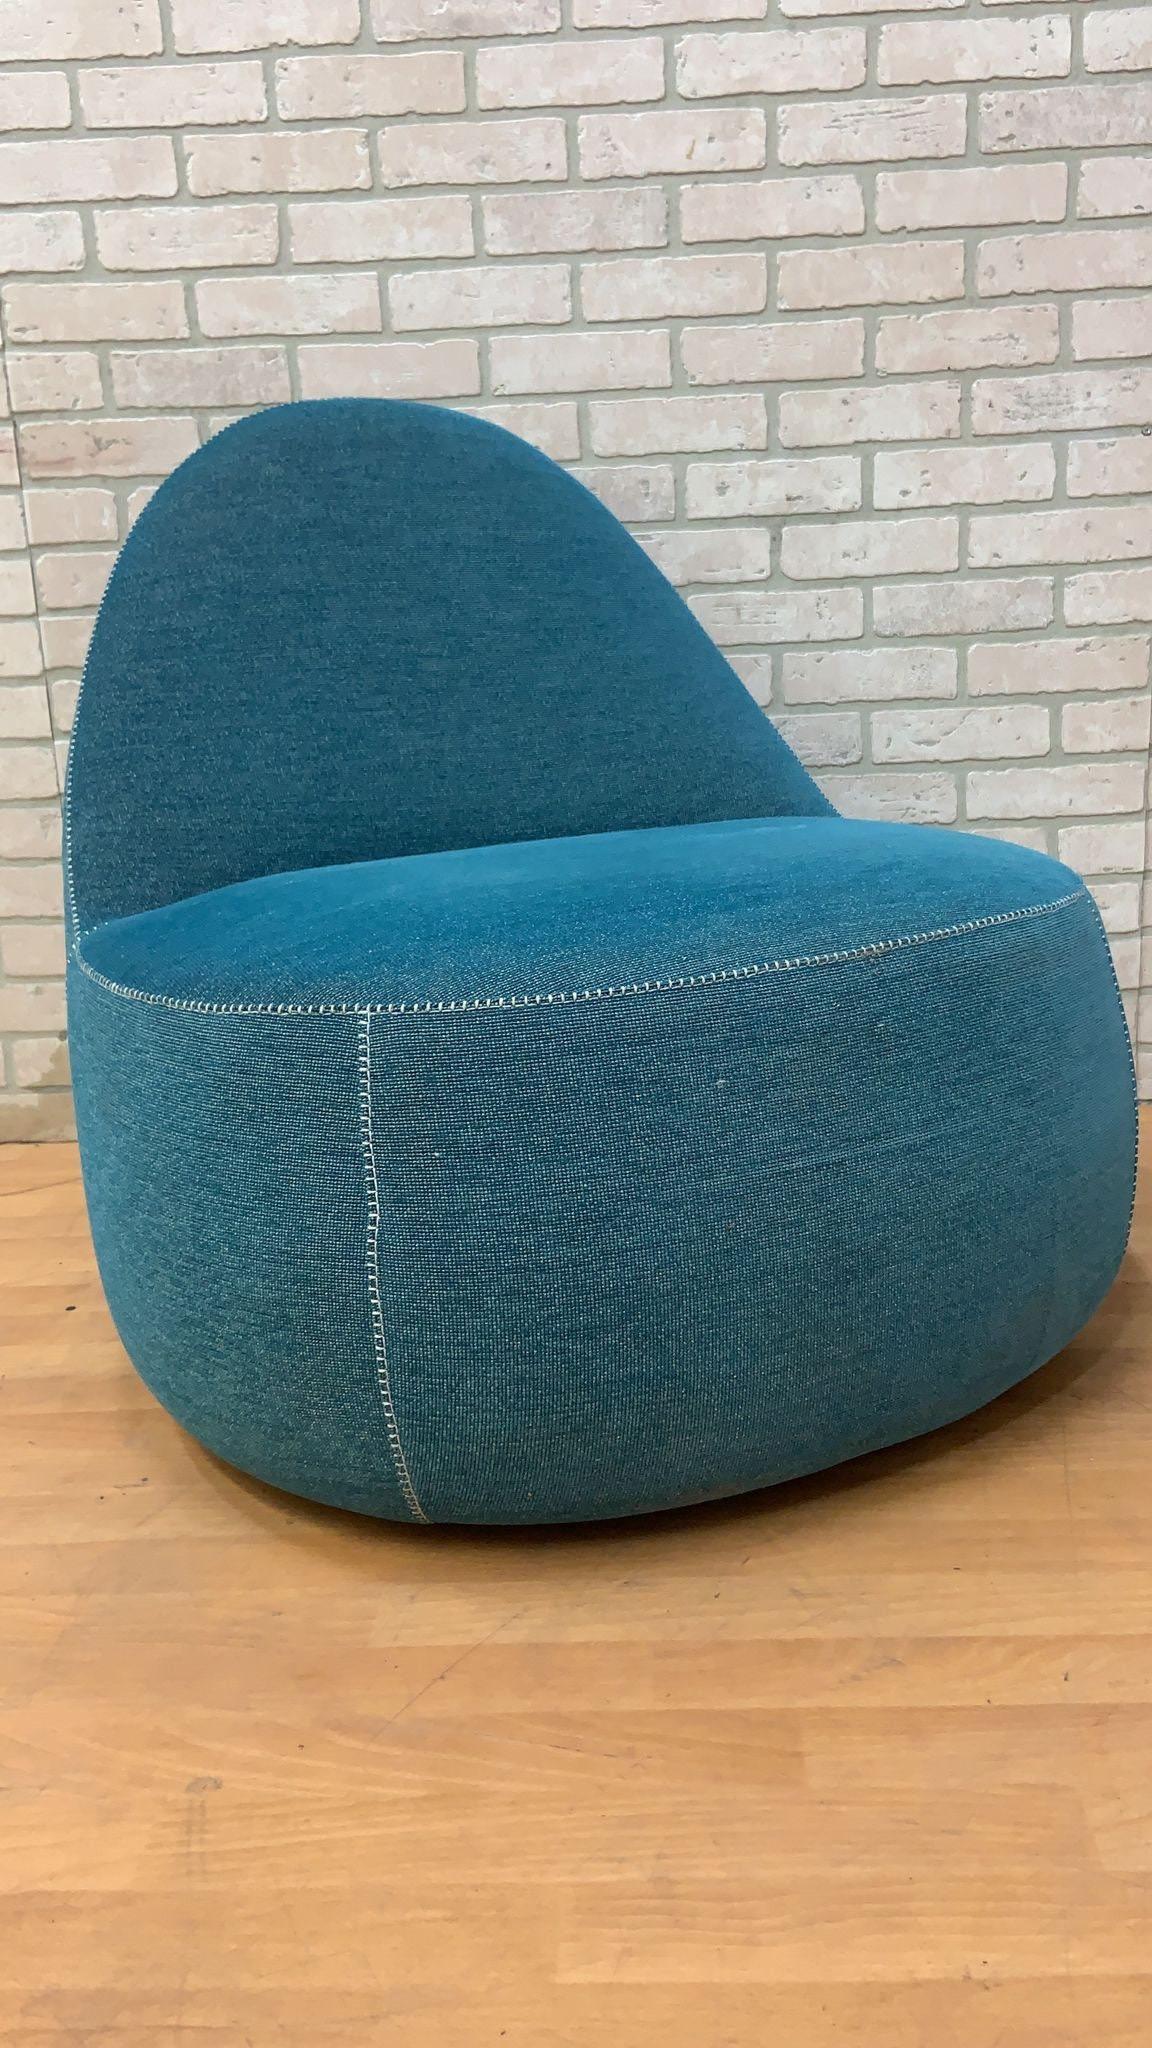 Moderner Bernhardt Design Mitt Lounge Chair in Lagoon Blue mit weißen Nähten und Griff 

Die Mitt Lounge wurde von den salvadorianischen Designern Harry und Claudia Washington für Bernhardt Design entworfen. Die bequeme und entspannte Form des